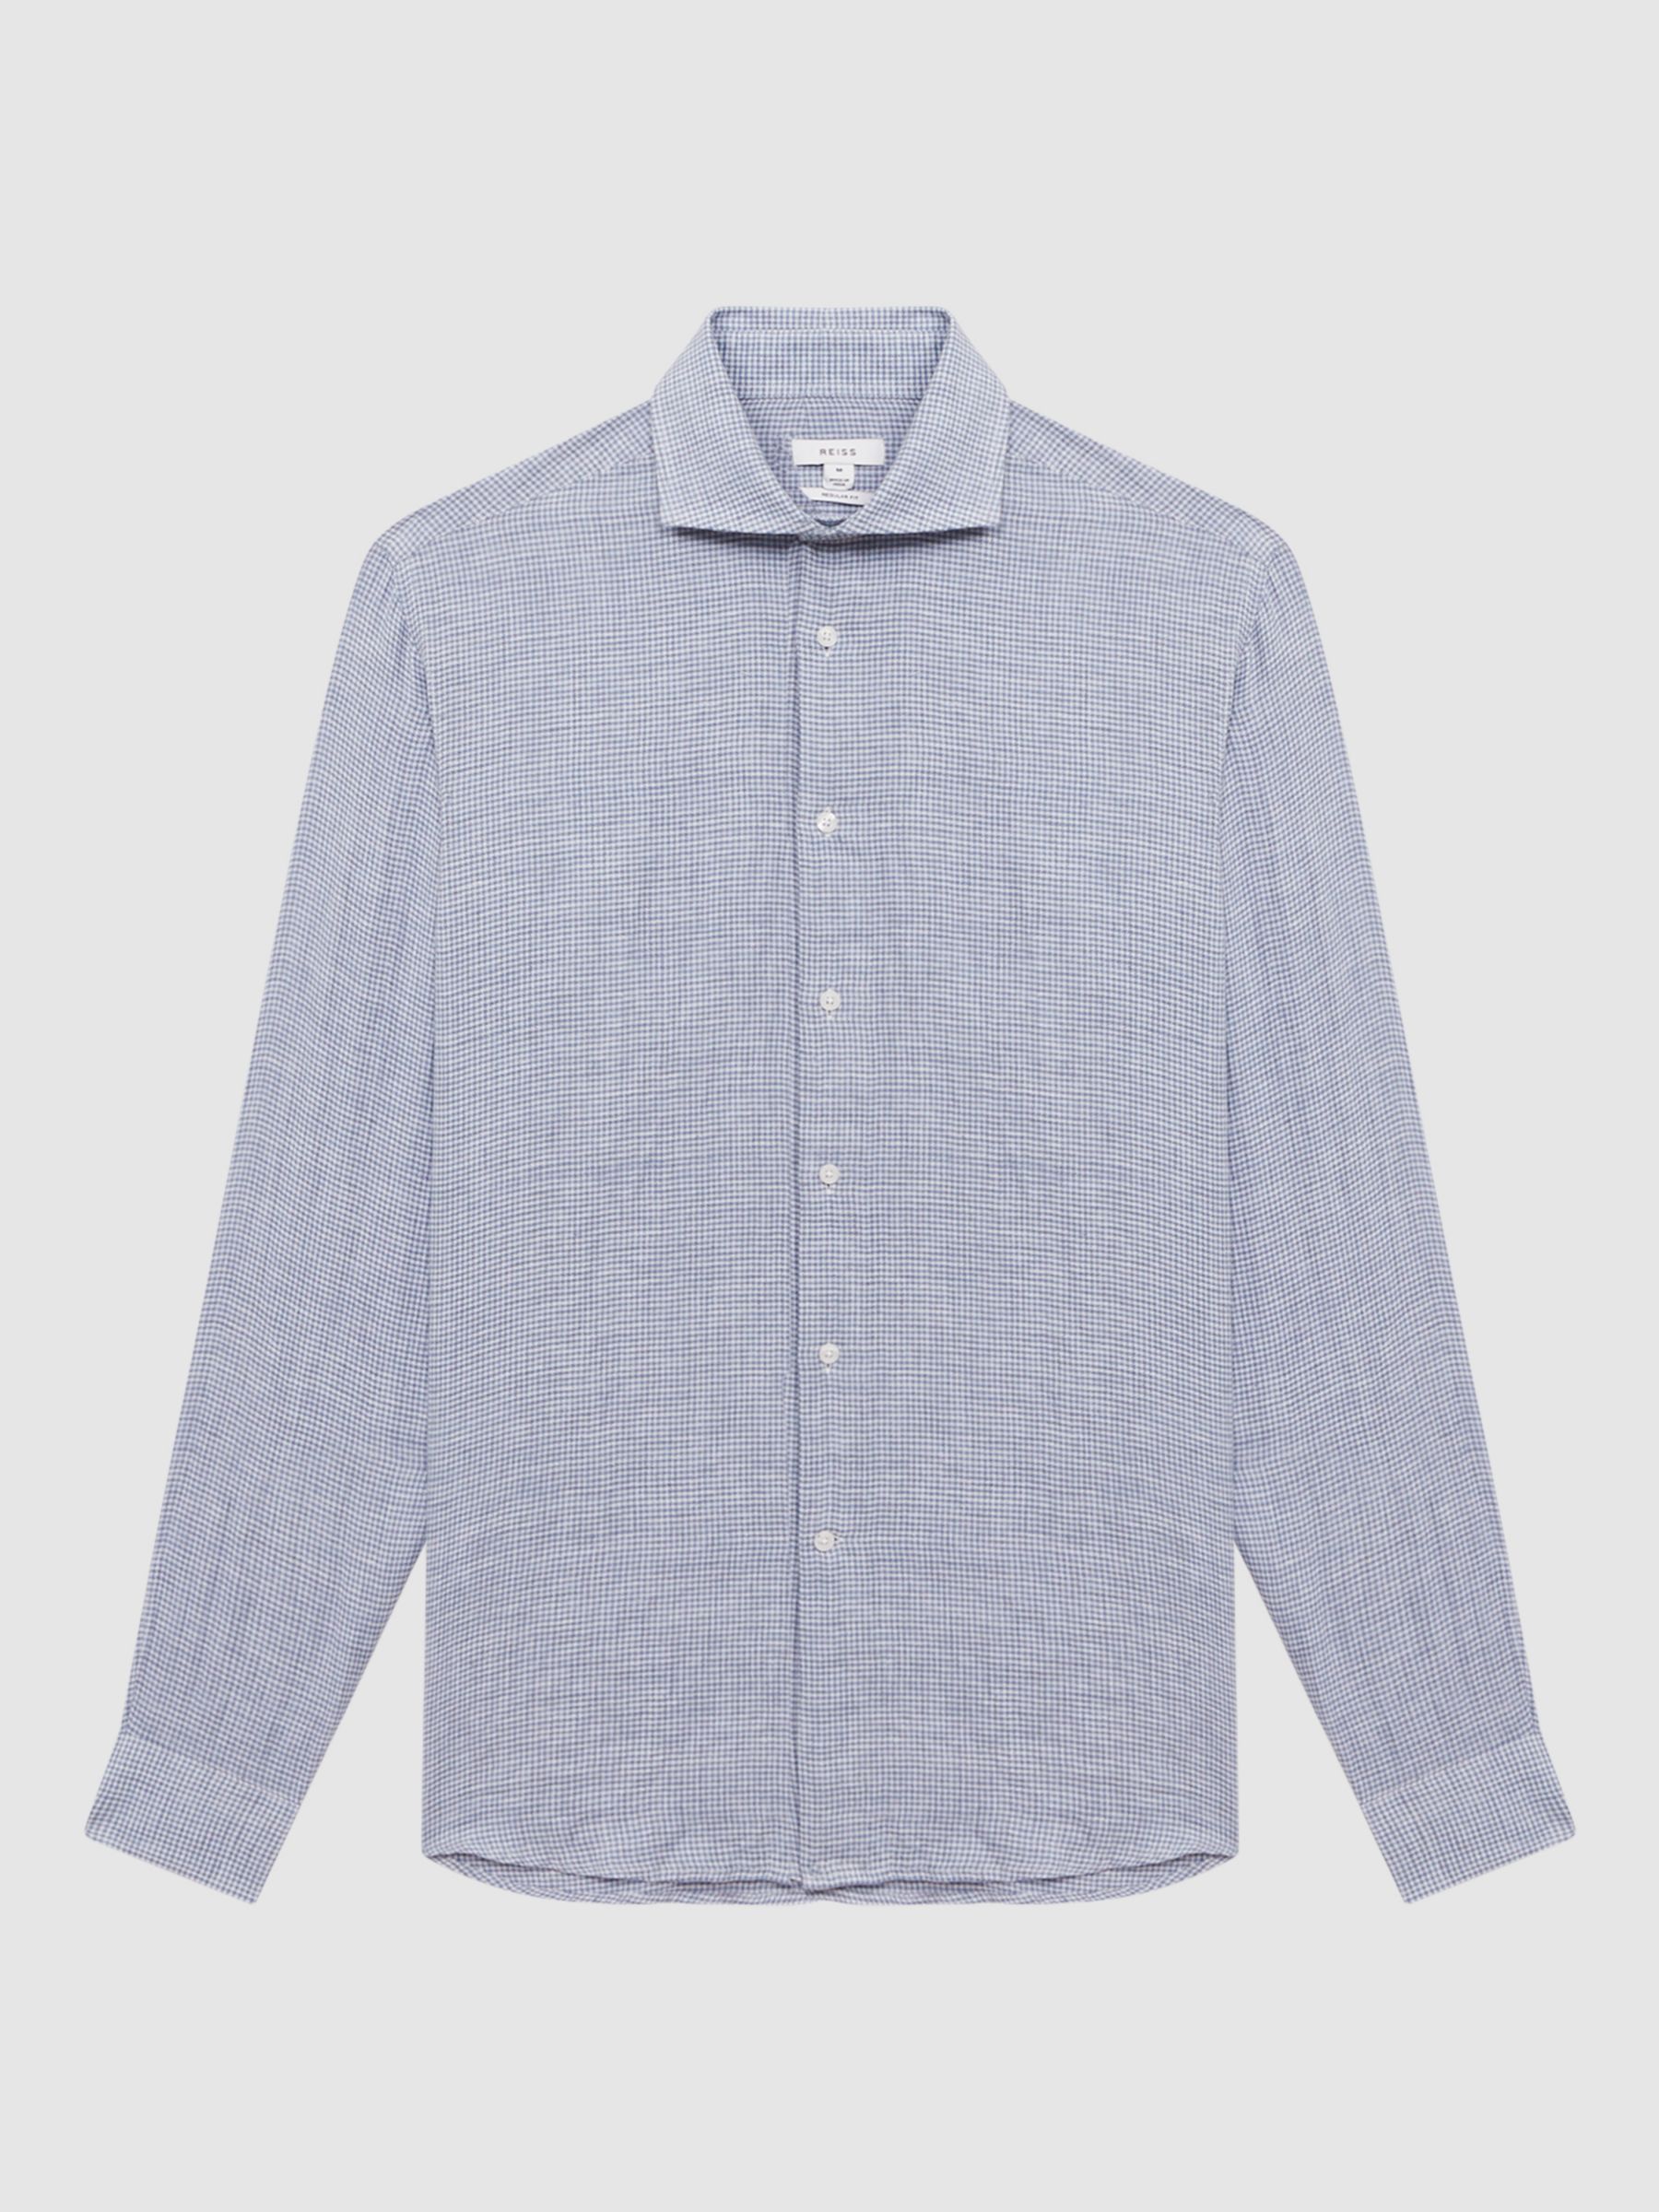 Reiss Ruban Gingham Check Linen Shirt, Blue, XS